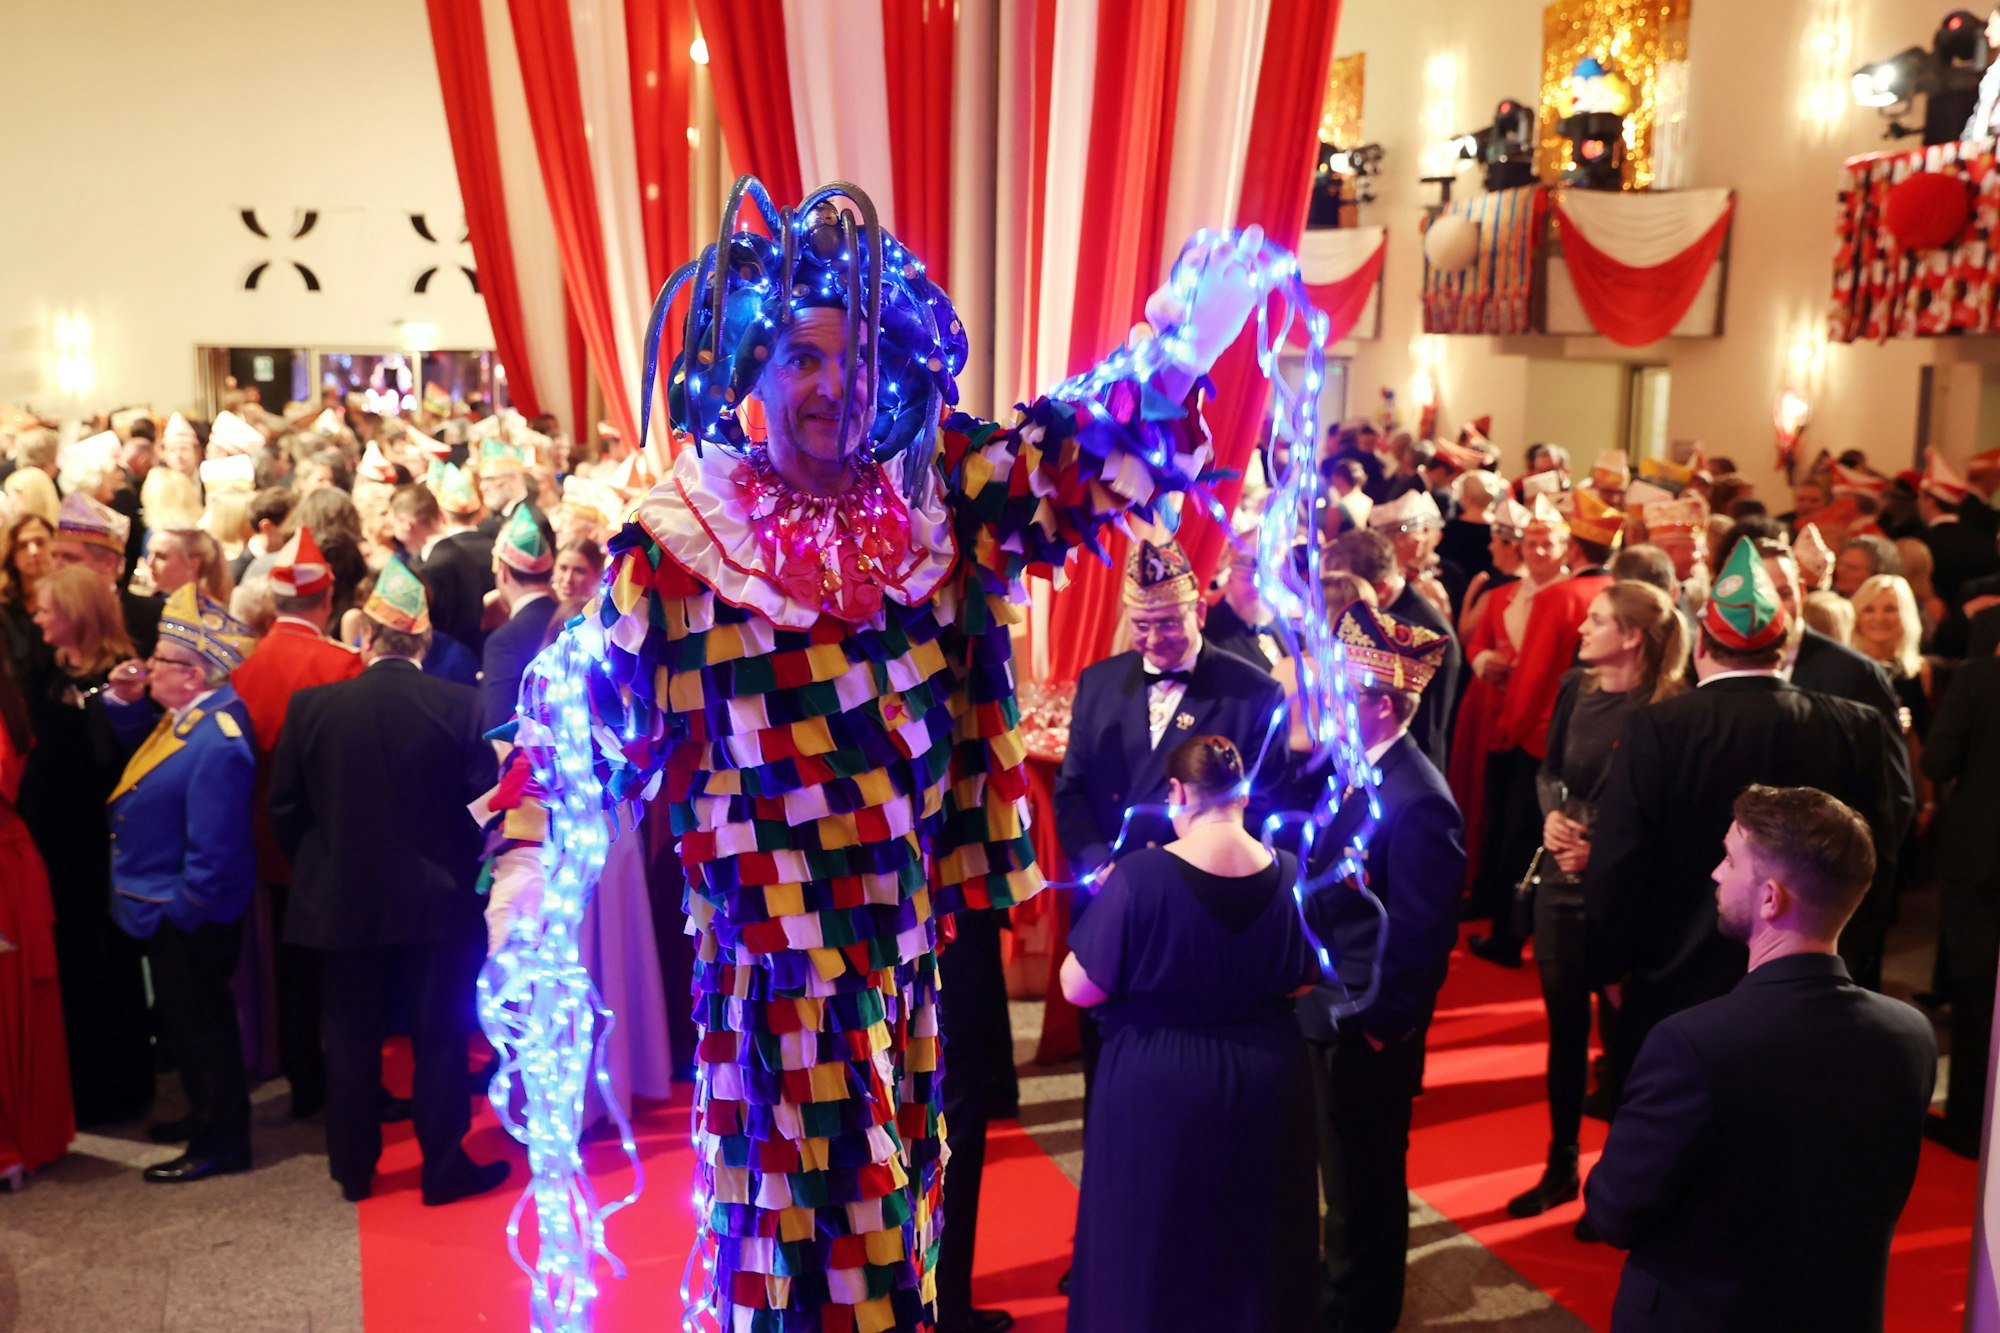 Ein Man in bunt-leuchtendem Kostüm steht in der Menge der Prinzenproklamations-Gäste.